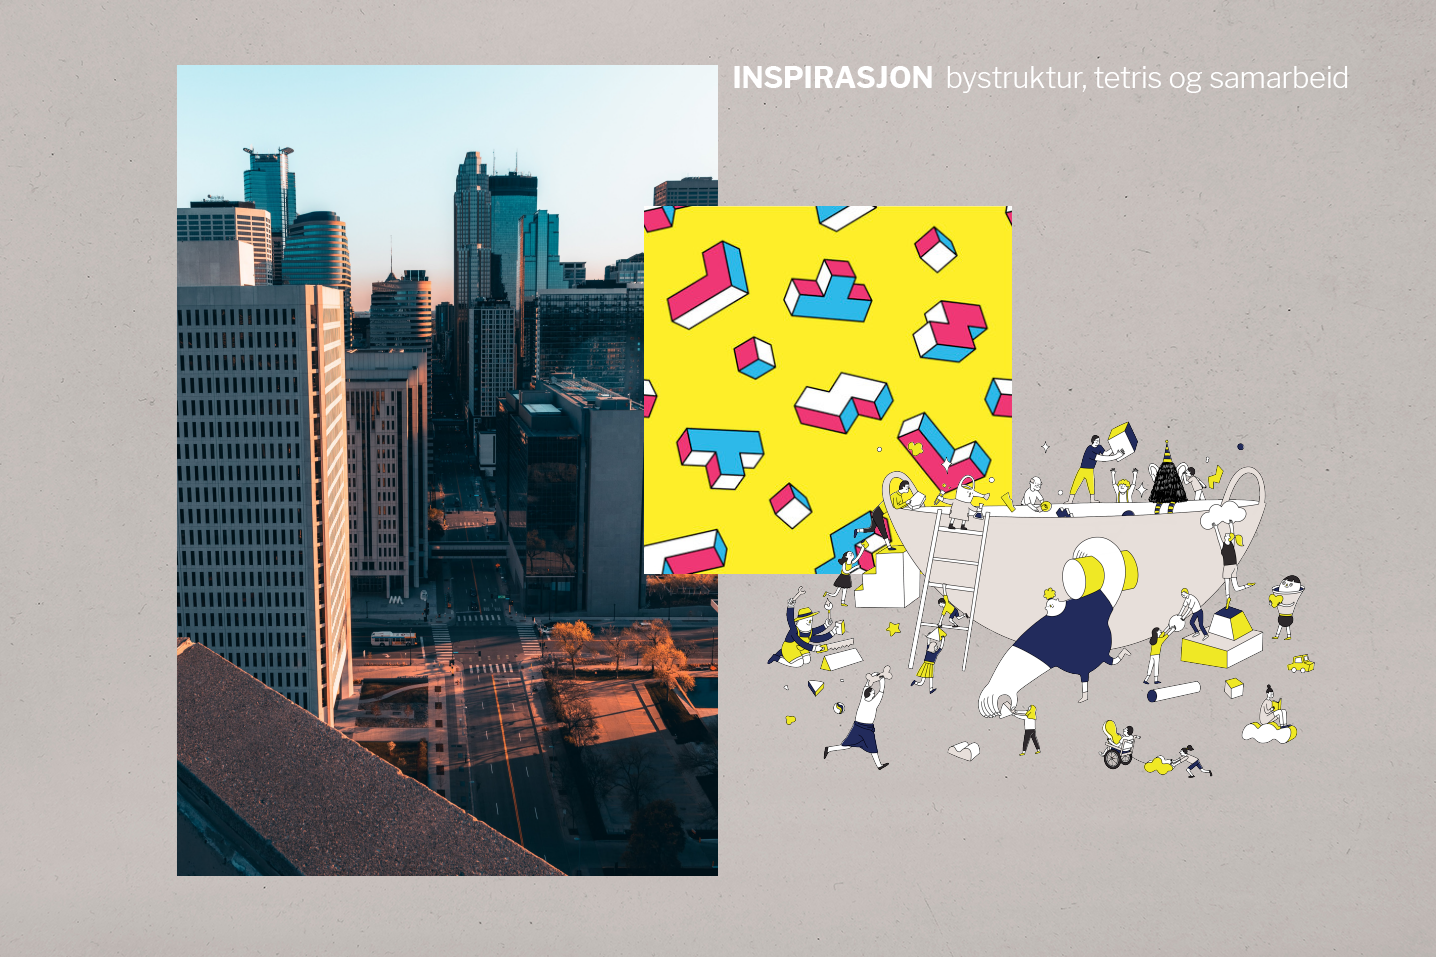 Bilde av en storby, illustrasjon av Tetris-lignende figurer og en illustrasjon av samarbeid. Teksten lyder: INSPIRASJON bystruktur, tetris og samarbeid.